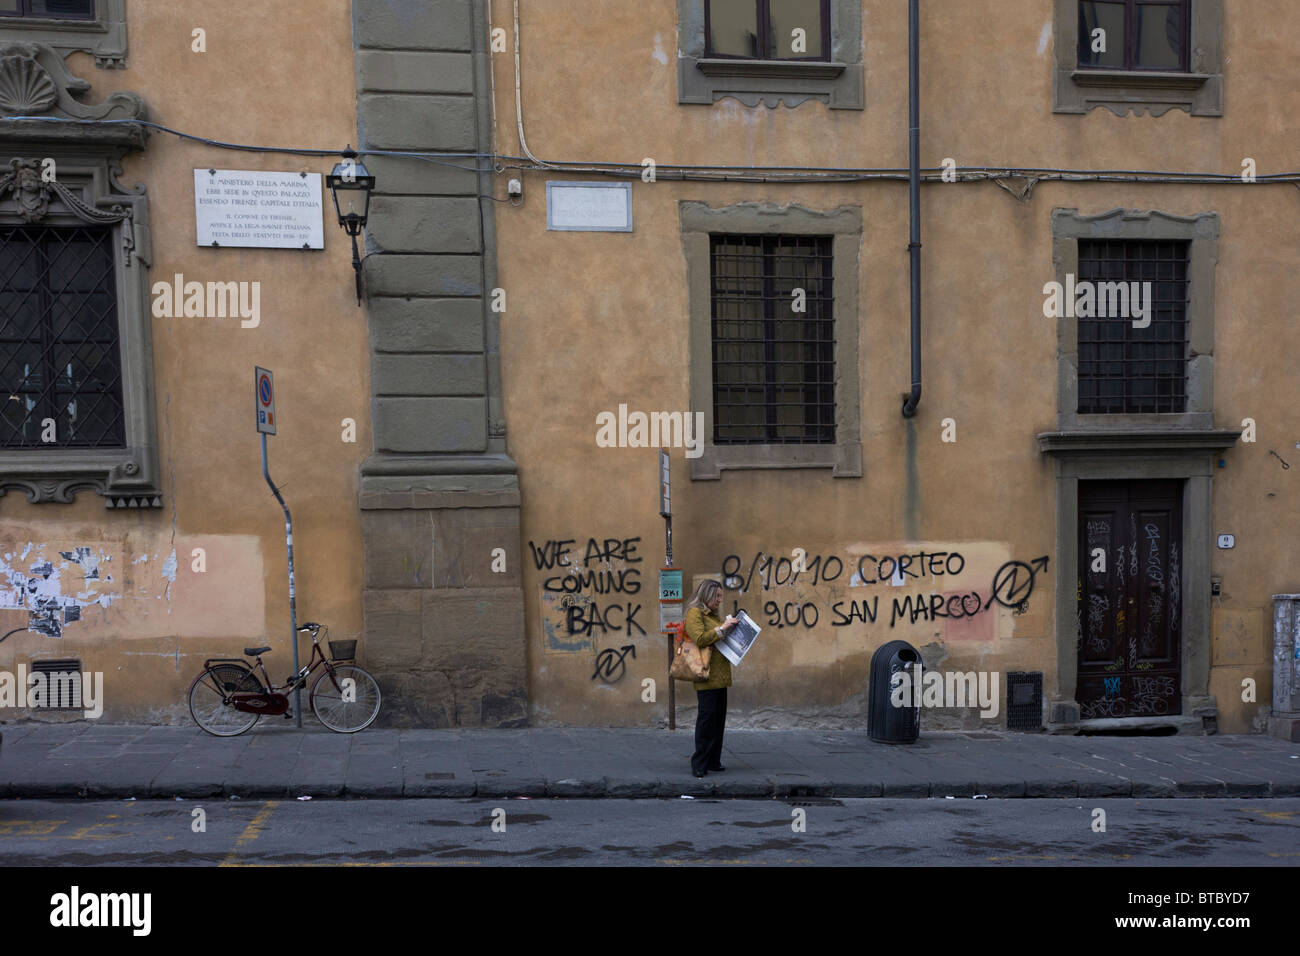 Politische Graffiti besprüht von Aerosol auf öffentliche Gebäude in der Nähe von Ponte Vecchio in Florenz. Stockfoto